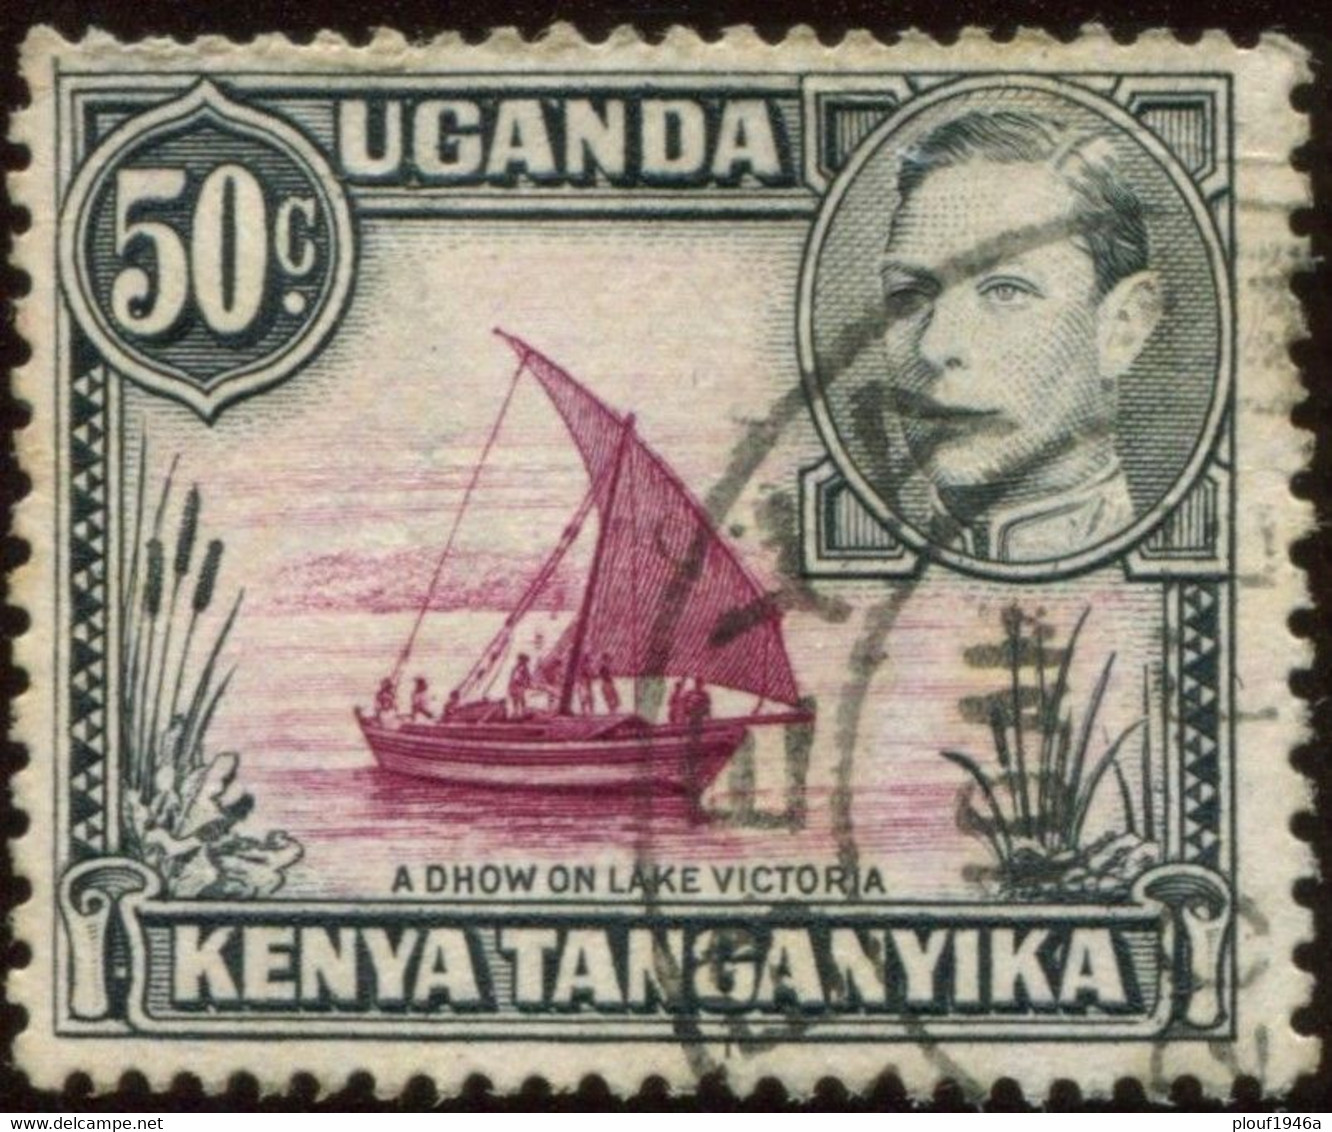 Pays : 260,1 (Kenya-Ouganda-Tanganyika )  Yvert Et Tellier N° :  56 (o) / Stanley & Gibbons  : 144 (o) - Kenya, Ouganda & Tanganyika